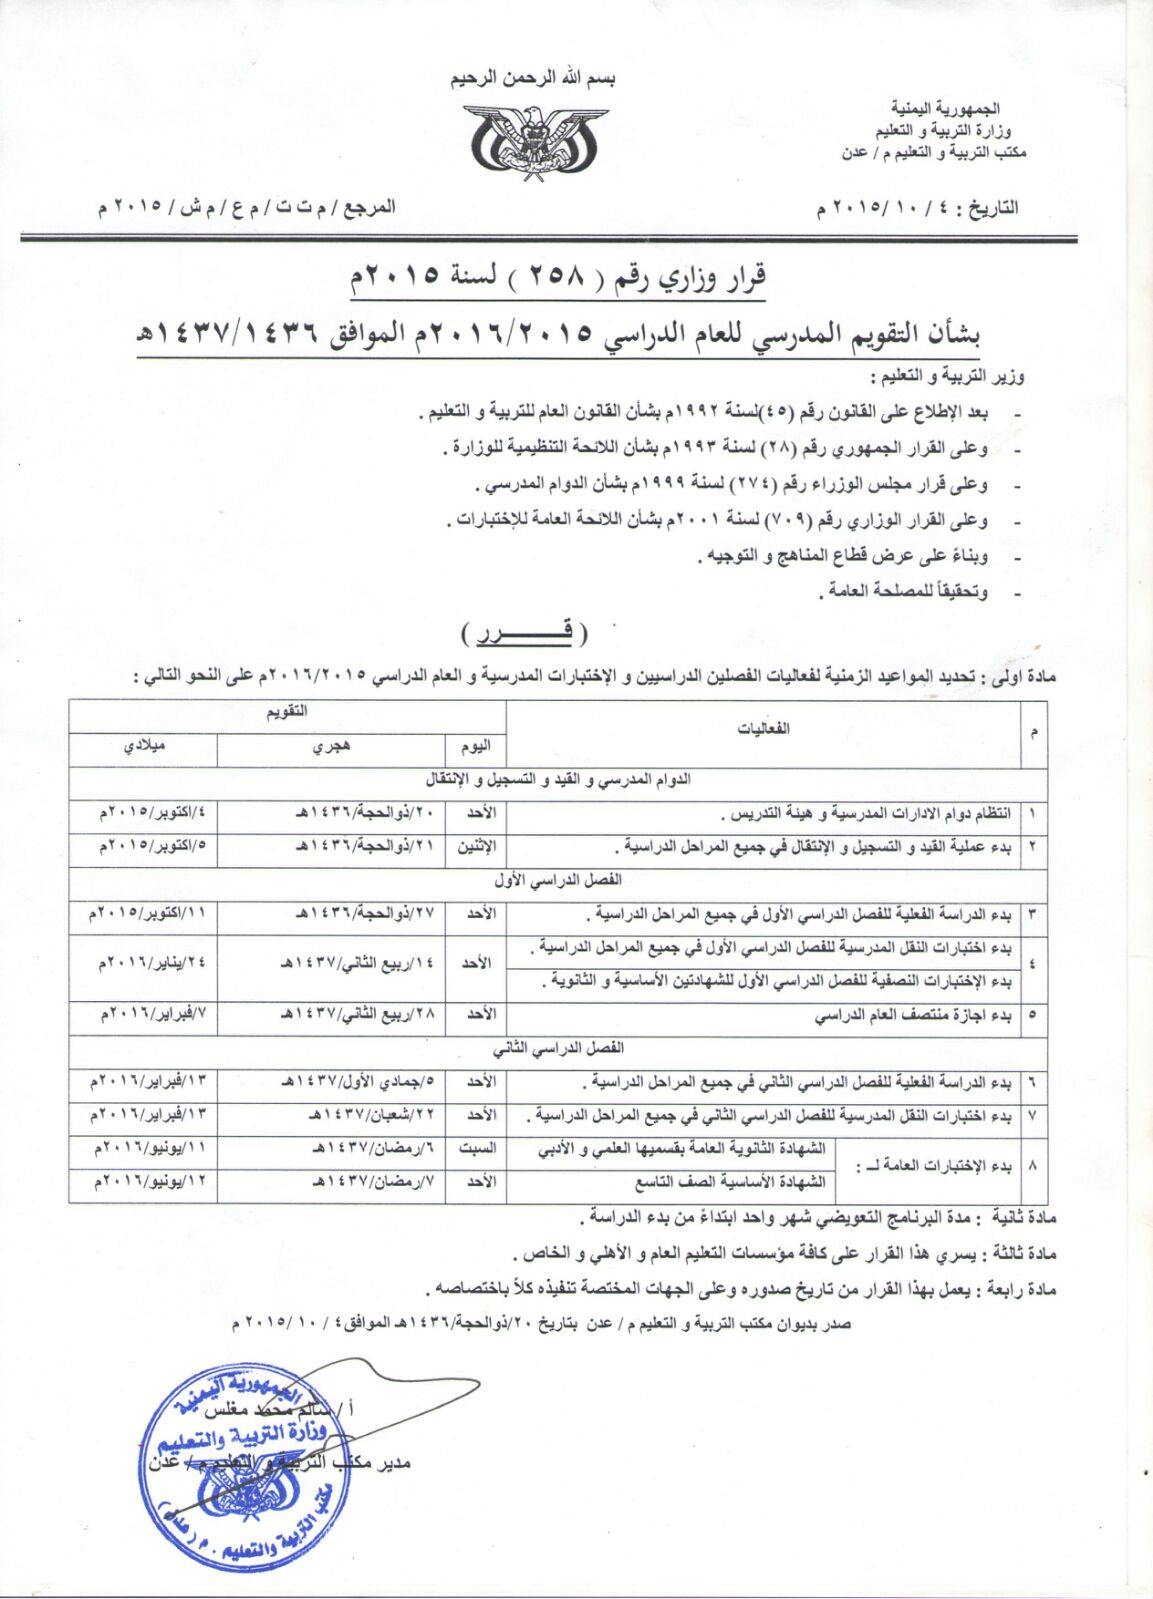 صدور قرار وزاري جديد في العاصمة عدن ..صورة القرار